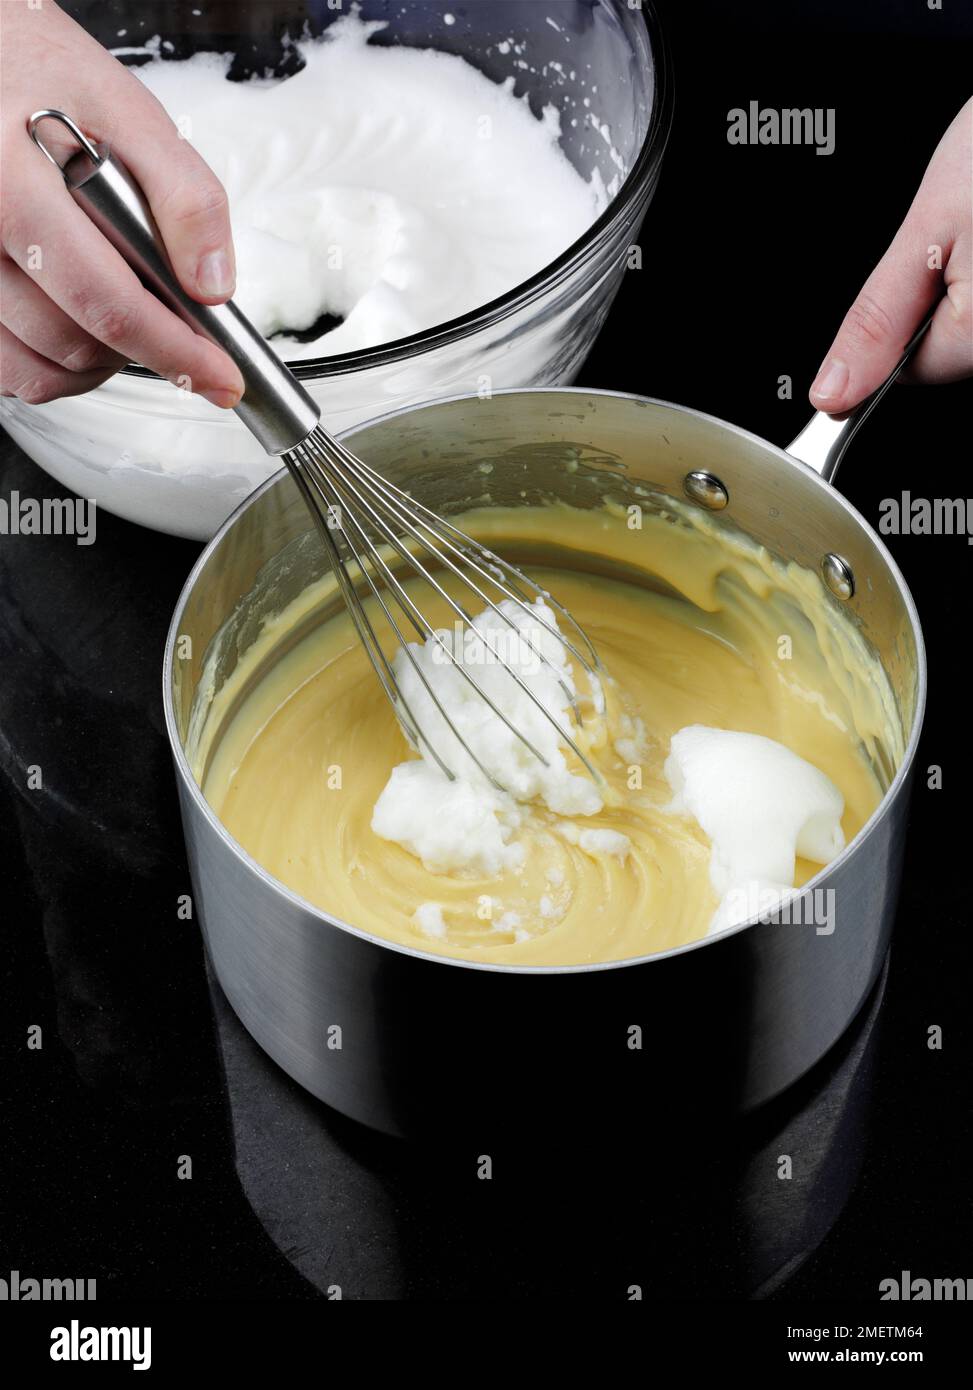 Käse-Soufflés zubereiten, Eiweiß zur gekühlten Sauce hinzufügen und Mischung mit Schneebesen schlagen Stockfoto